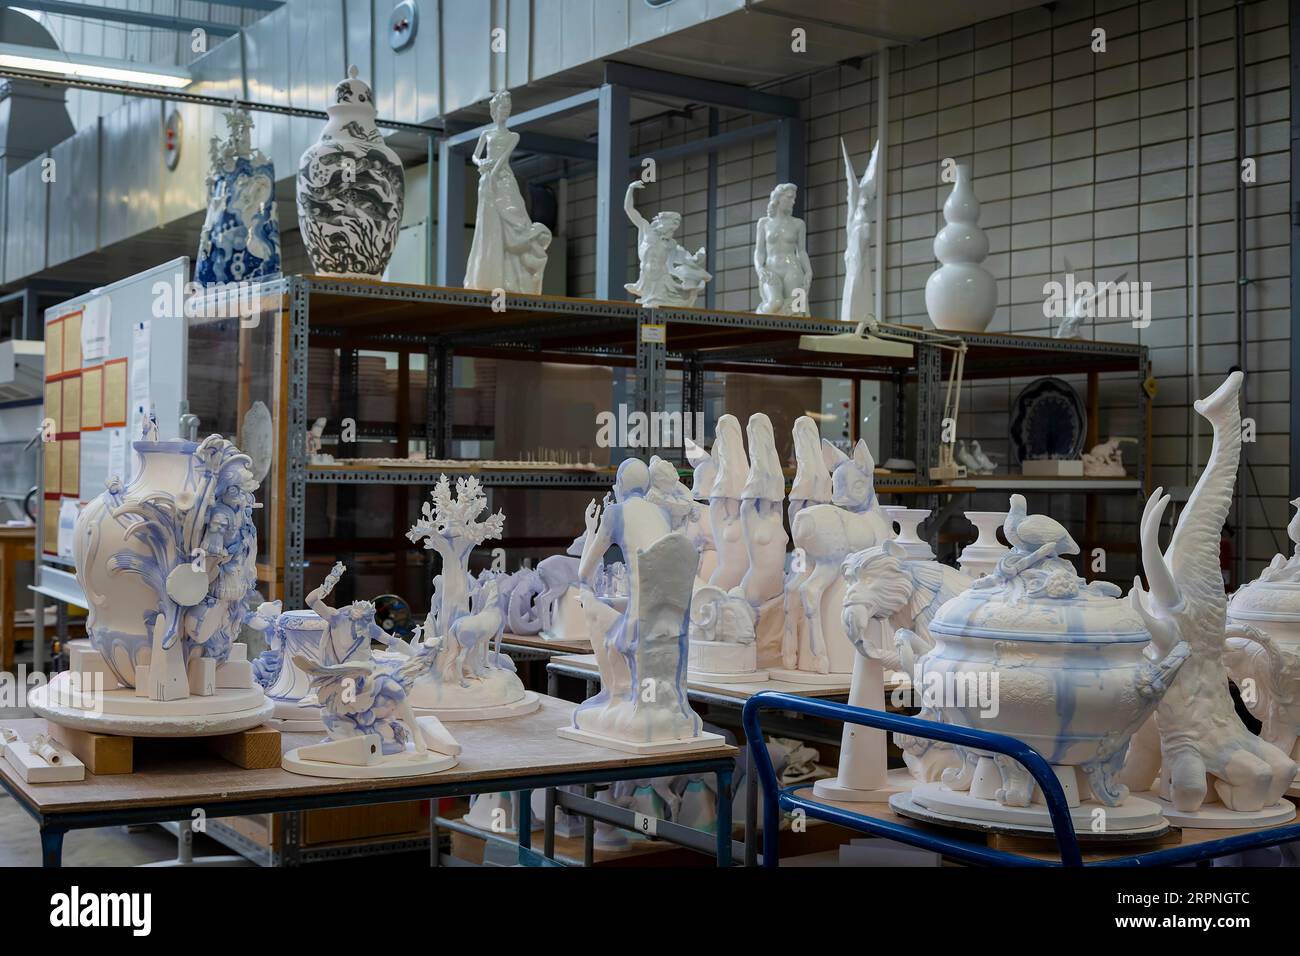 Meissen è la più antica manifattura di porcellana d'Europa e si è contraddistinta per l'artigianato unico sin dalla sua fondazione nel 1710. Forni con spazi vuoti Foto Stock